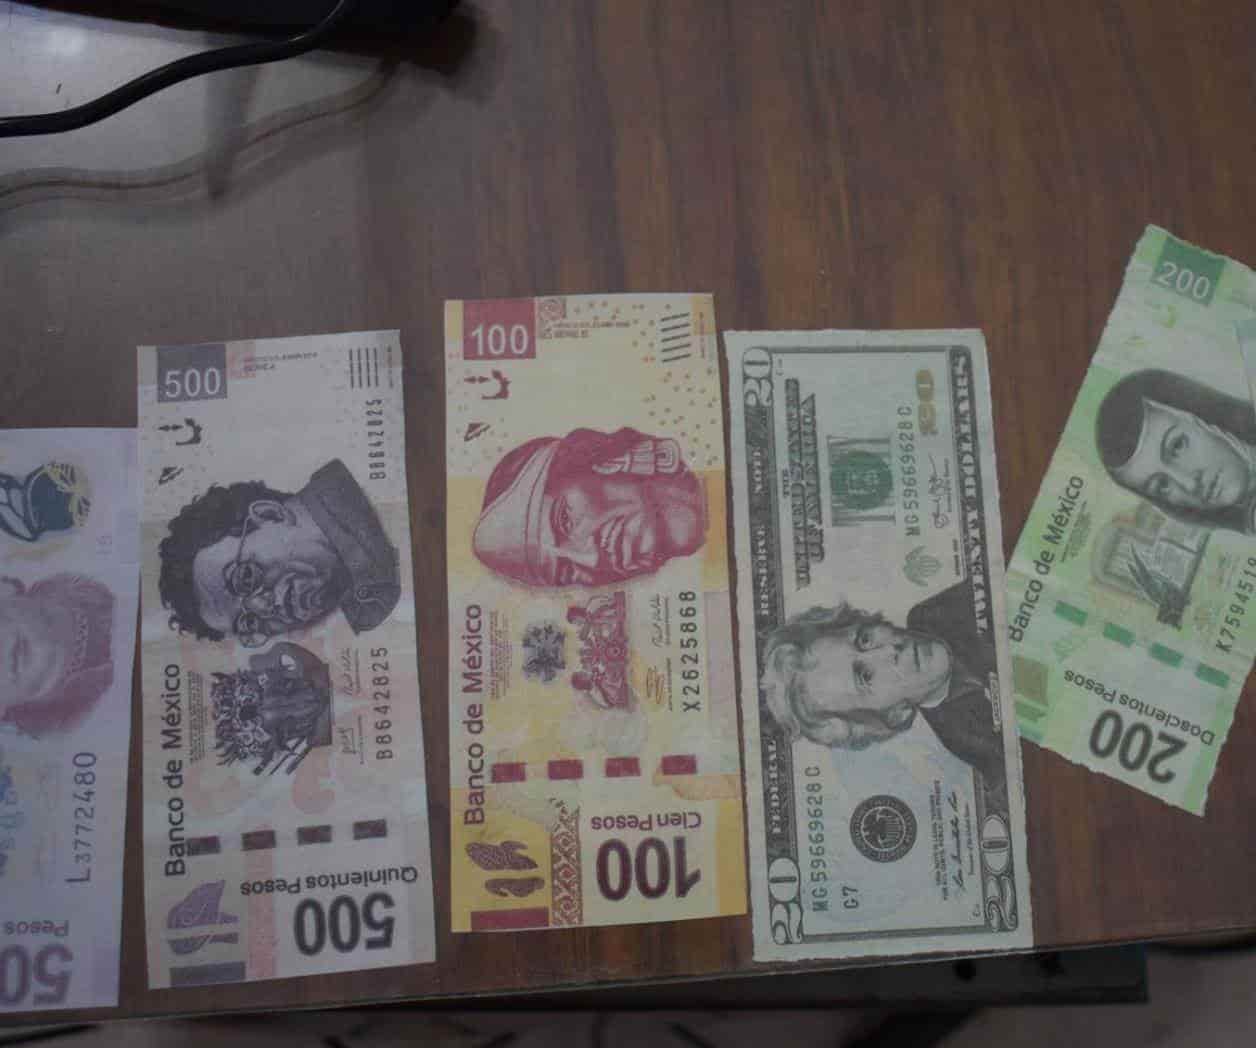 En 2017 circularon 112 millones de pesos en billetes falsos en